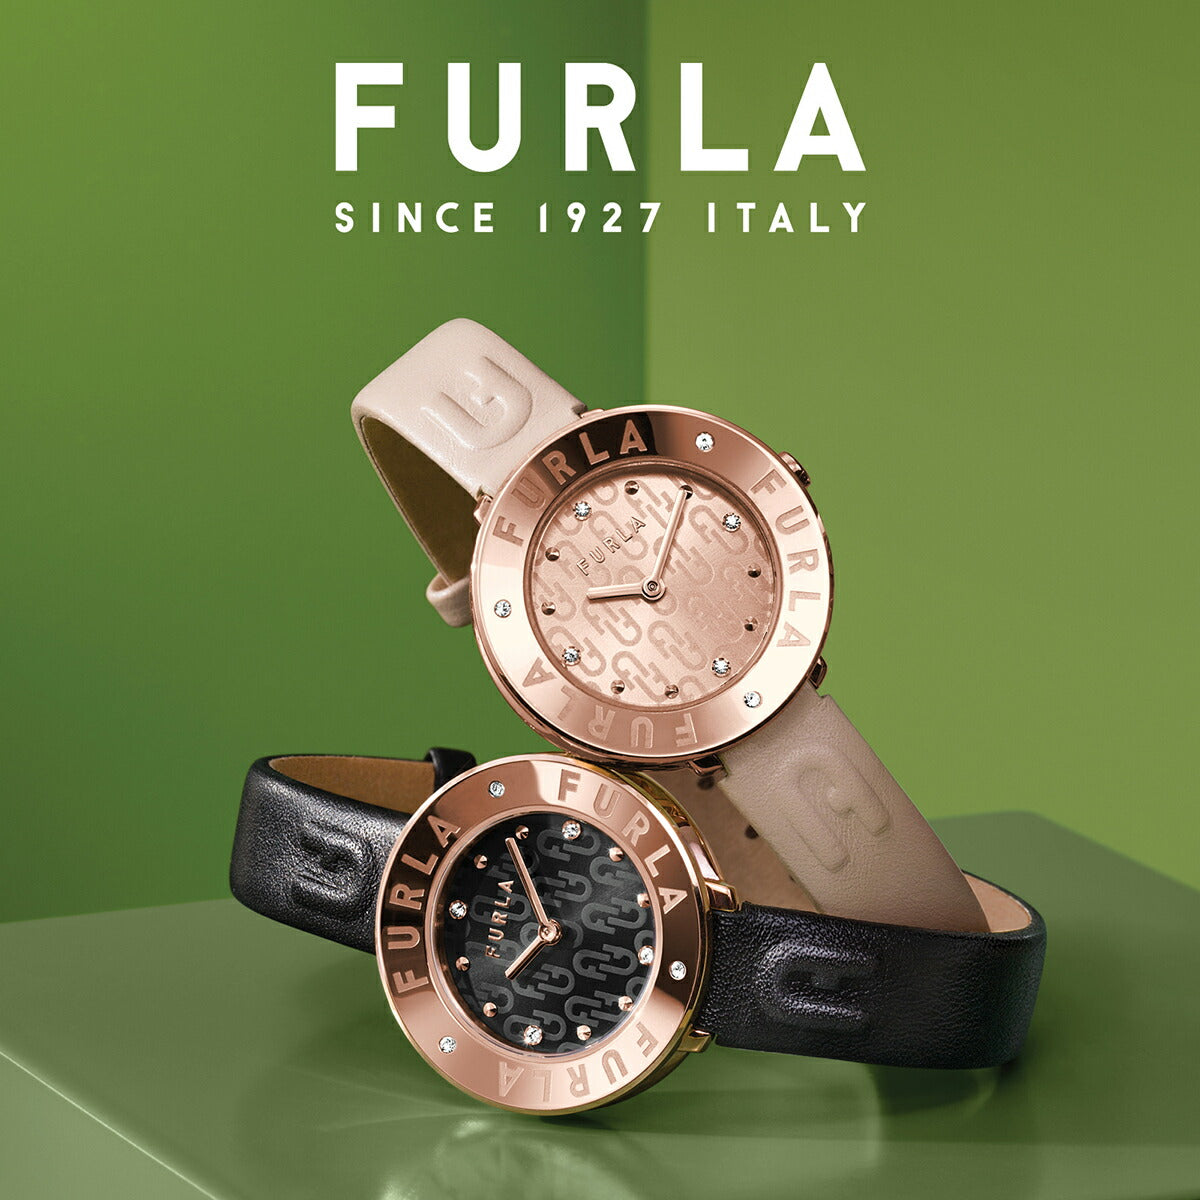 フルラ エッセンシャル FL-WW00004016L3 レディース 腕時計 クオーツ 電池式 革ベルト ピンク